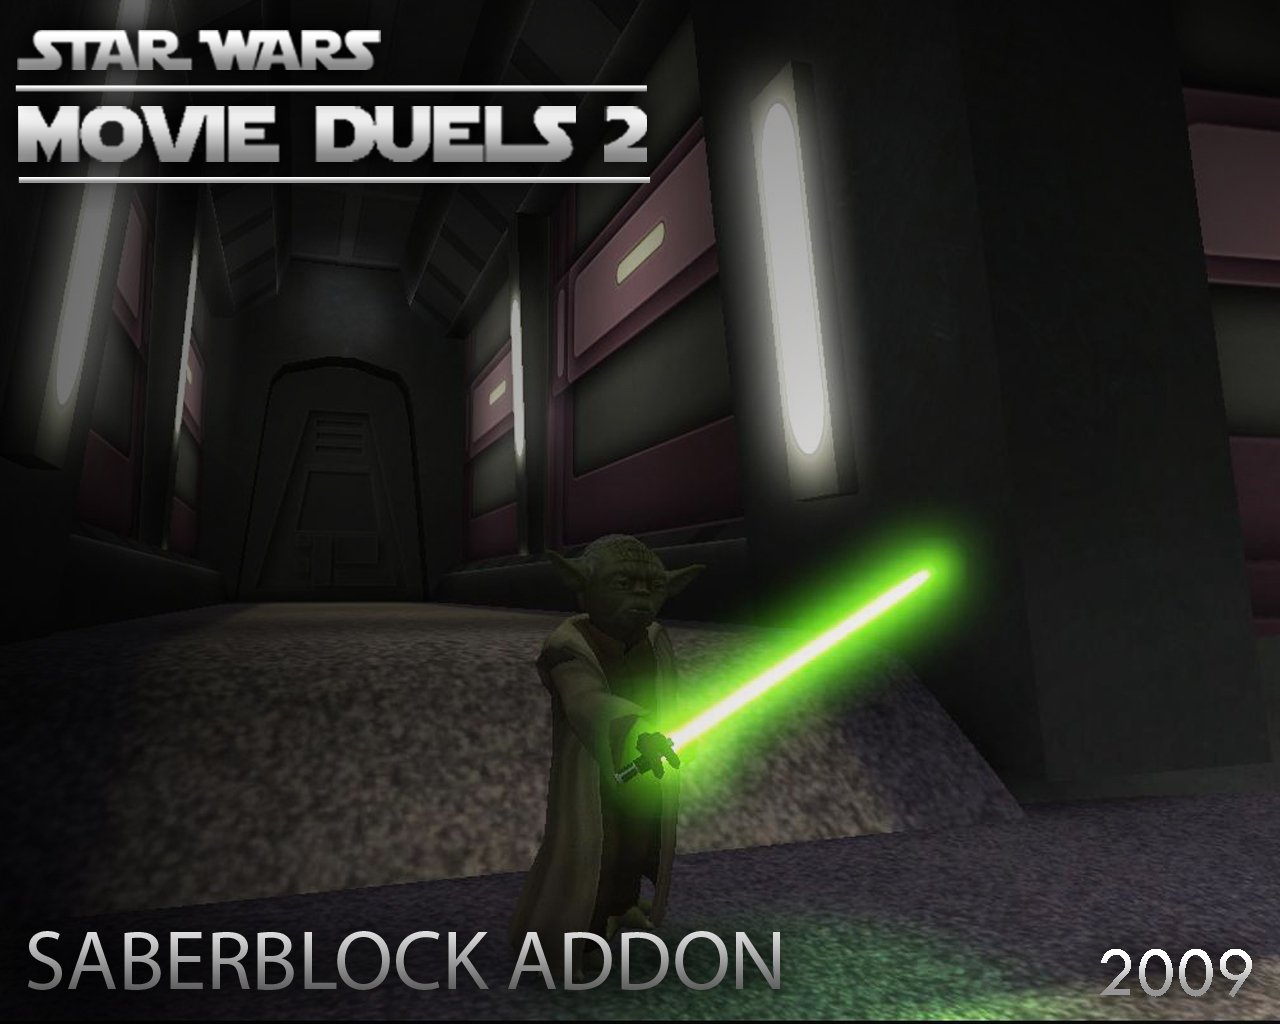 Star wars movie duels 2